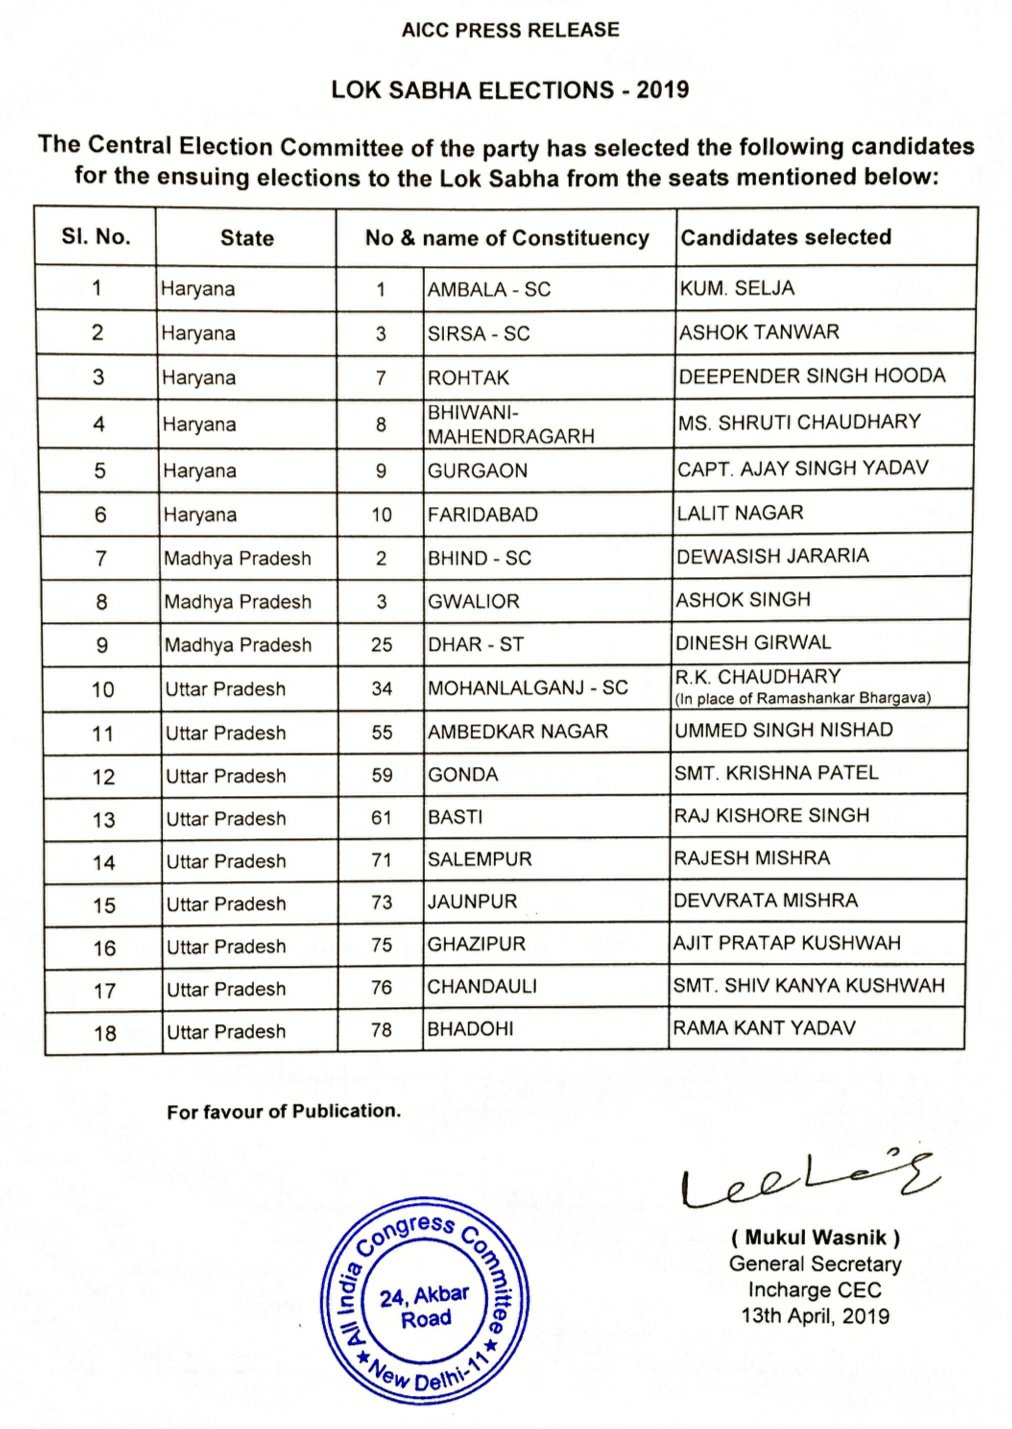 कांग्रेस ने अपने 18 लोकसभा प्रत्याशियों की सूची की जारी, धार से दिनेश ग्रेवाल को मिली उम्मीदवारी | New India Times